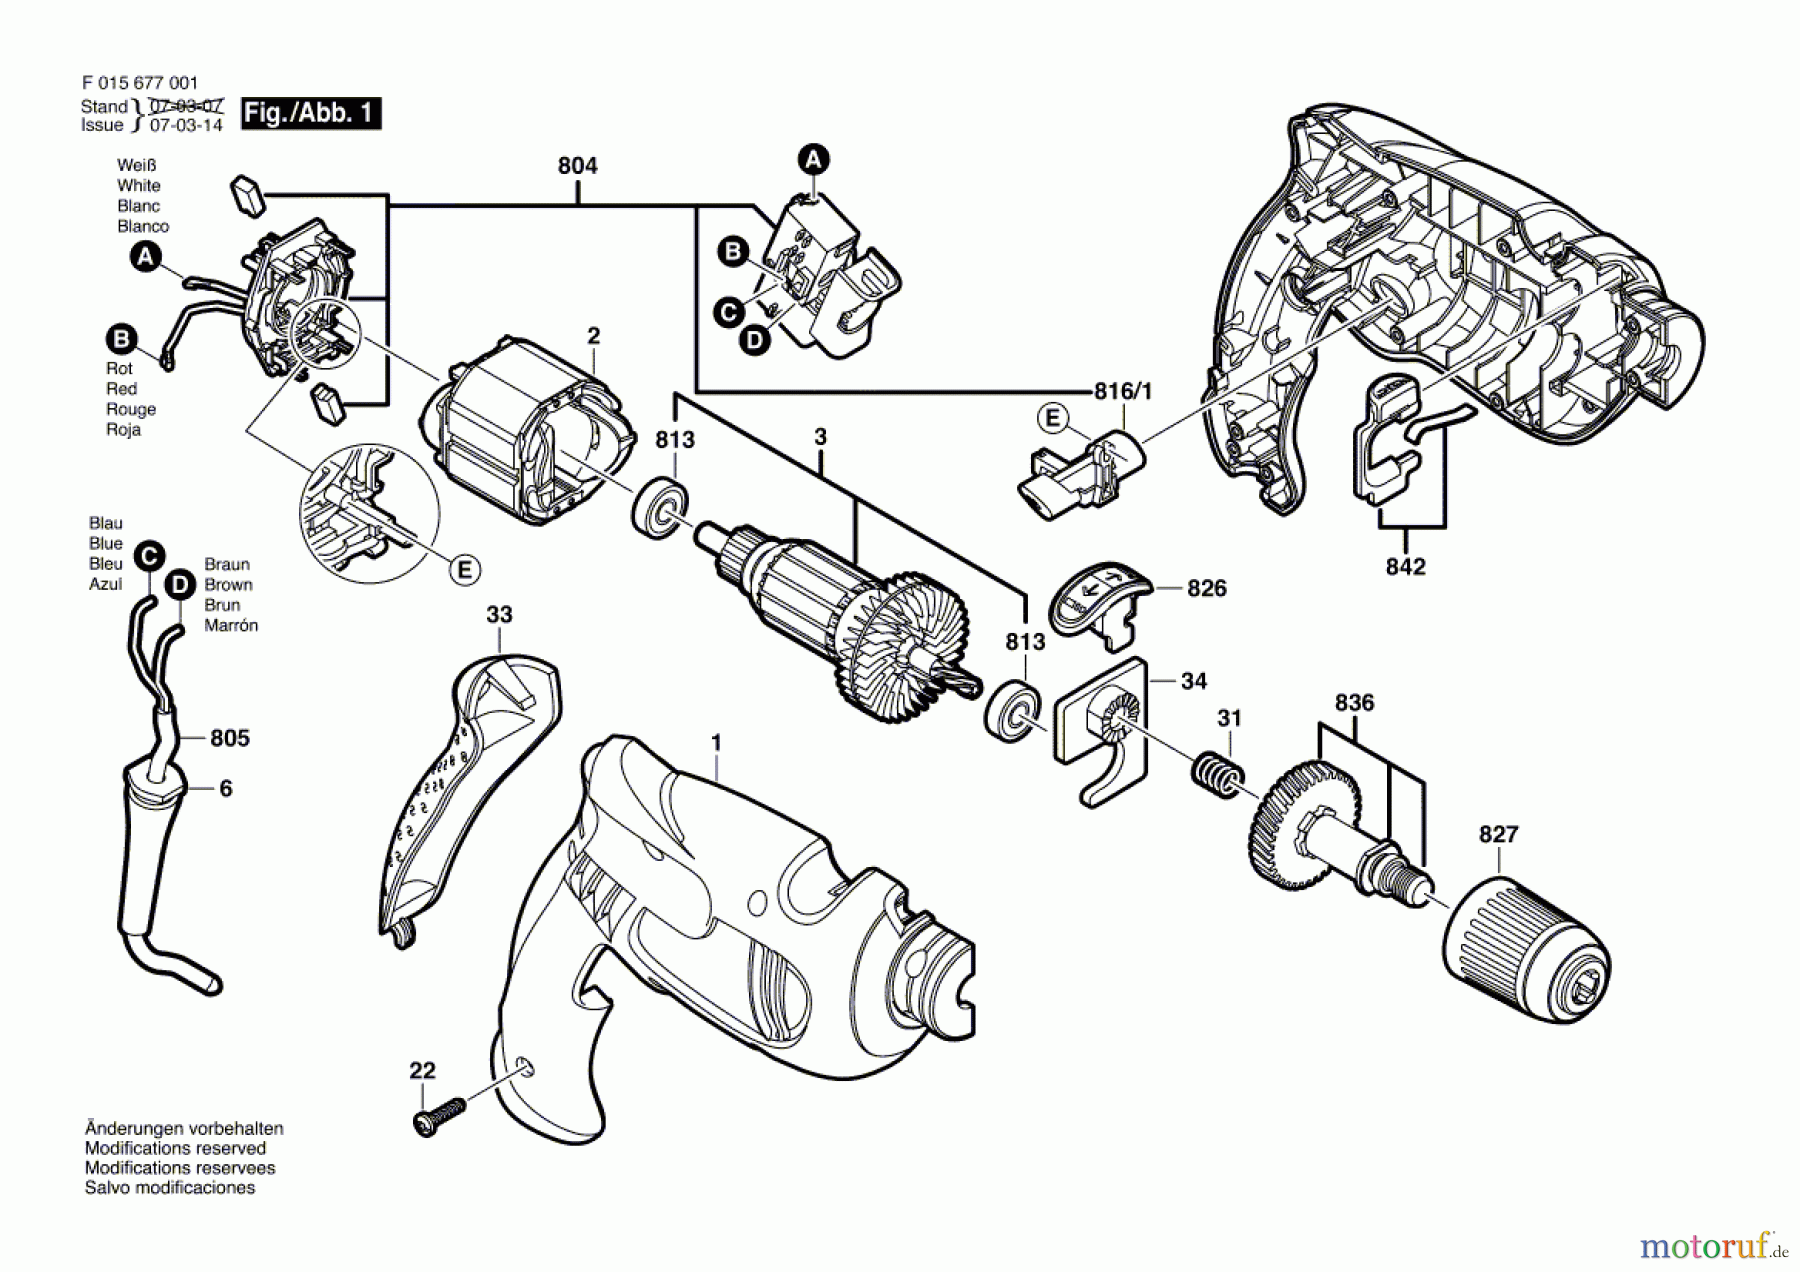  Bosch Werkzeug Schlagbohrmaschine 6770 Seite 1